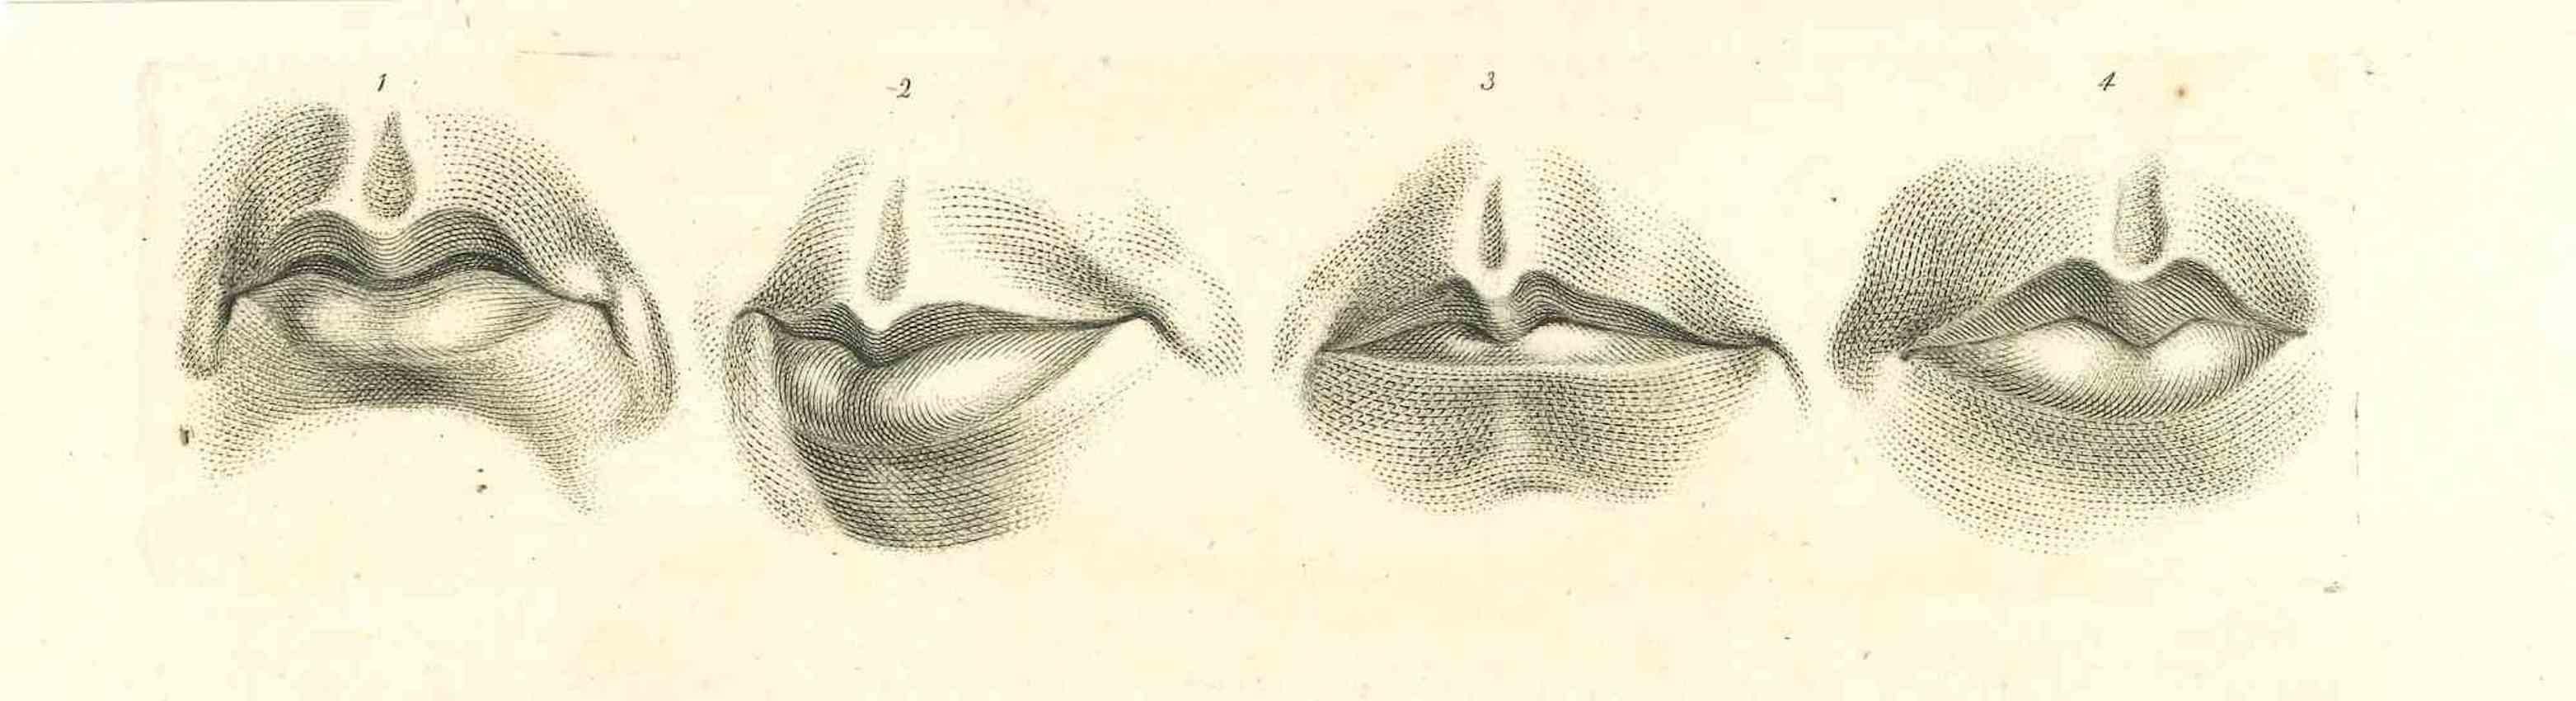 Lèvres - La physionomie est une gravure originale réalisée par Thomas Holloway pour les "Essais sur la physionomie, destinés à promouvoir la connaissance et l'amour de l'humanité" de Johann Caspar Lavater, Londres, Bensley, 1810. 

Bonnes